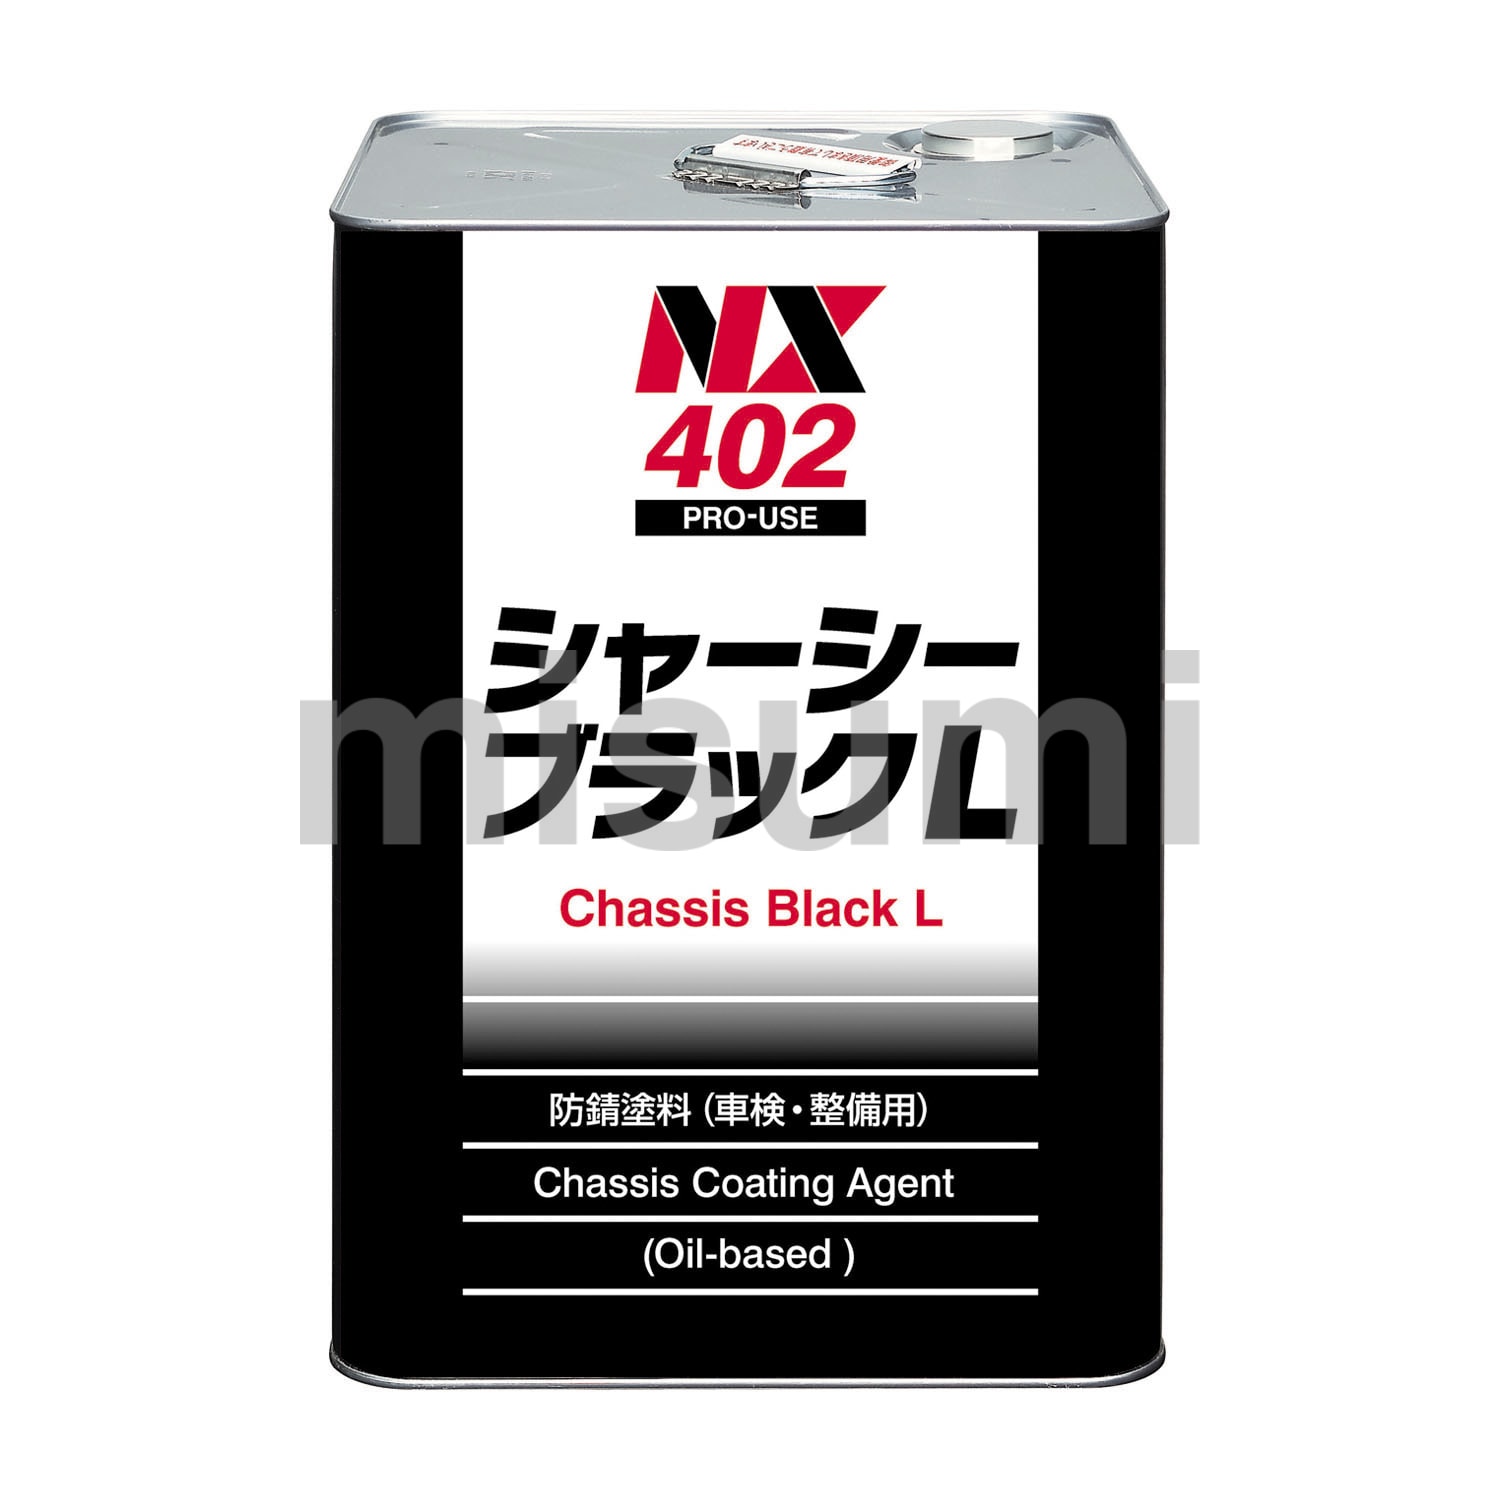 402 シャーシーブラック速乾 NX10・NX11・NX402 イチネンケミカルズ（旧タイホーコーザイ） MISUMI(ミスミ)